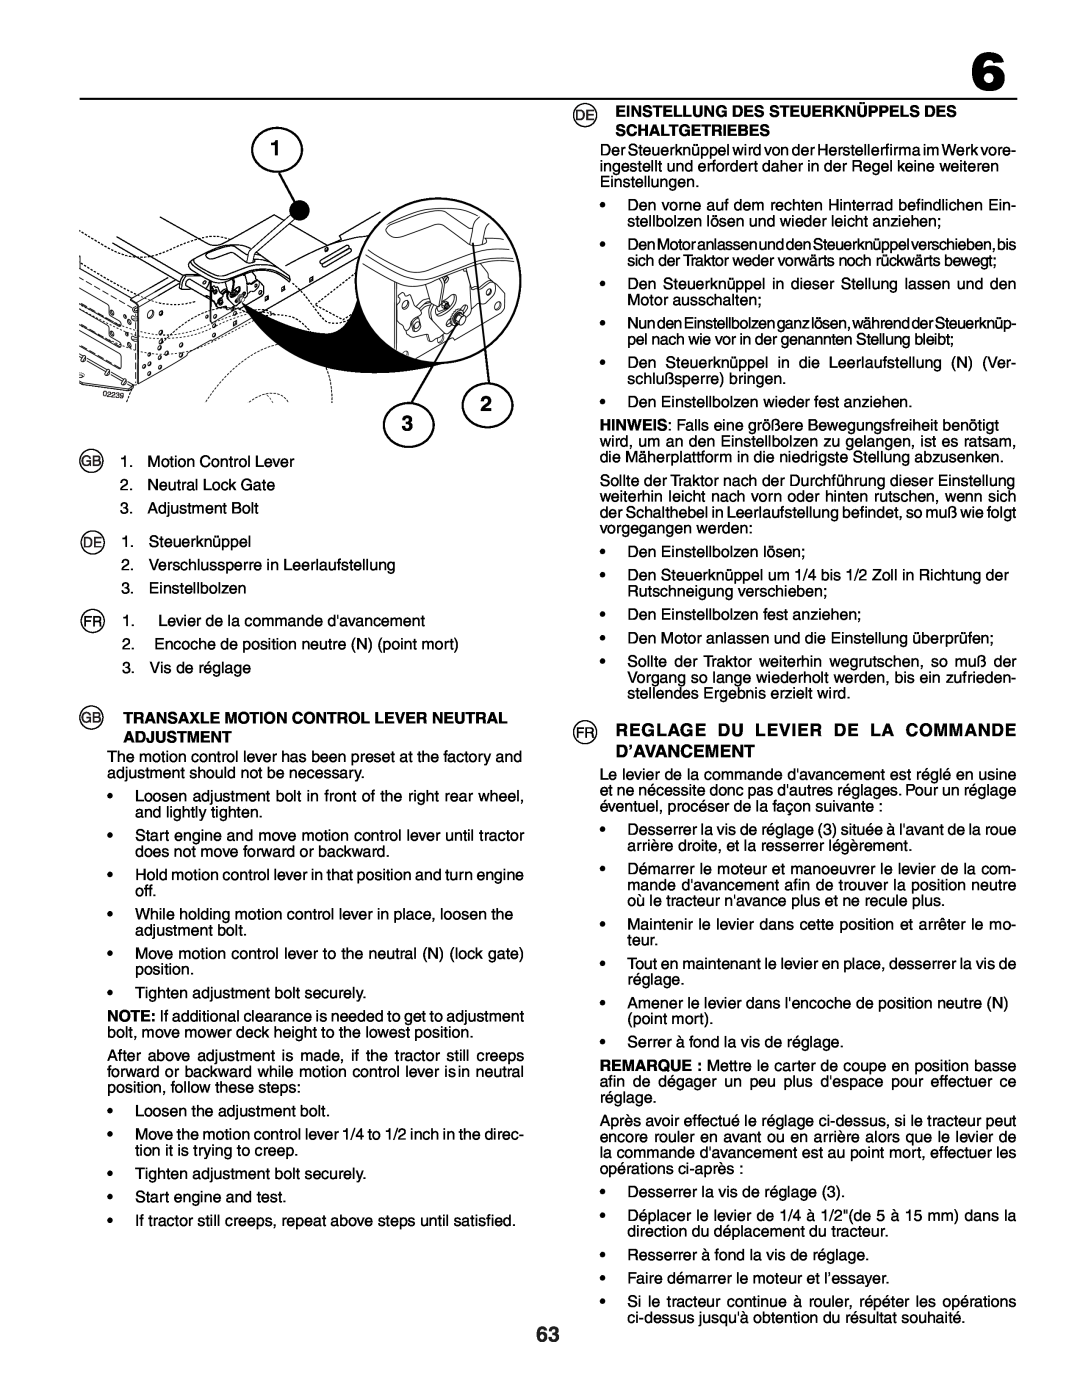 Husqvarna YTH150XP 1 2 3, Reglage Du Levier De La Commande D’Avancement, Transaxle Motion Control Lever Neutral Adjustment 